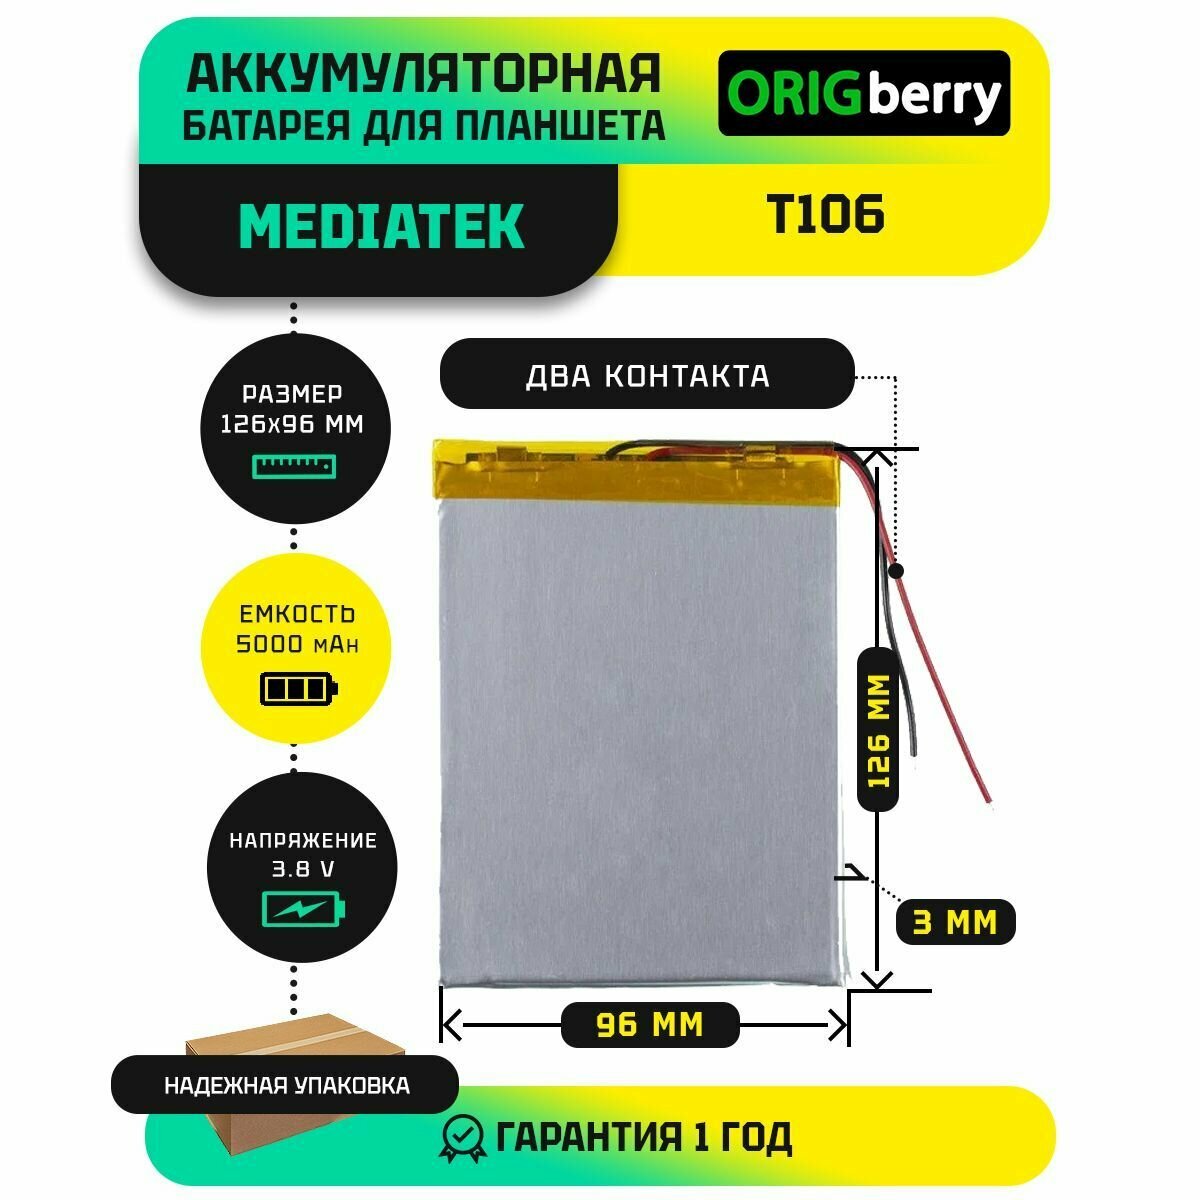 Аккумулятор для планшета Mediatek T106